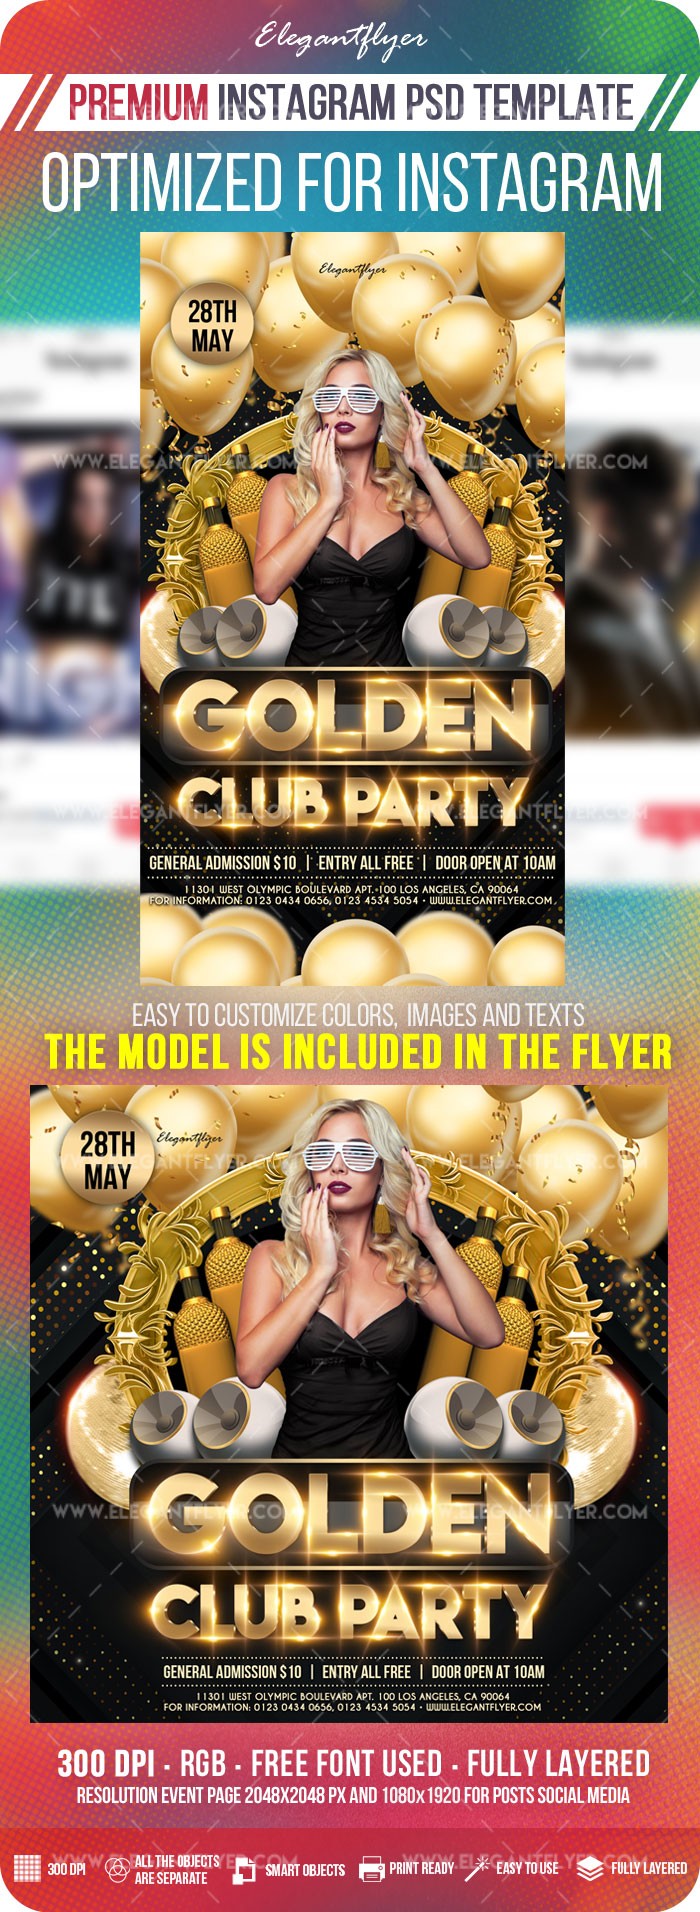 Goldene Club-Party Instagram by ElegantFlyer